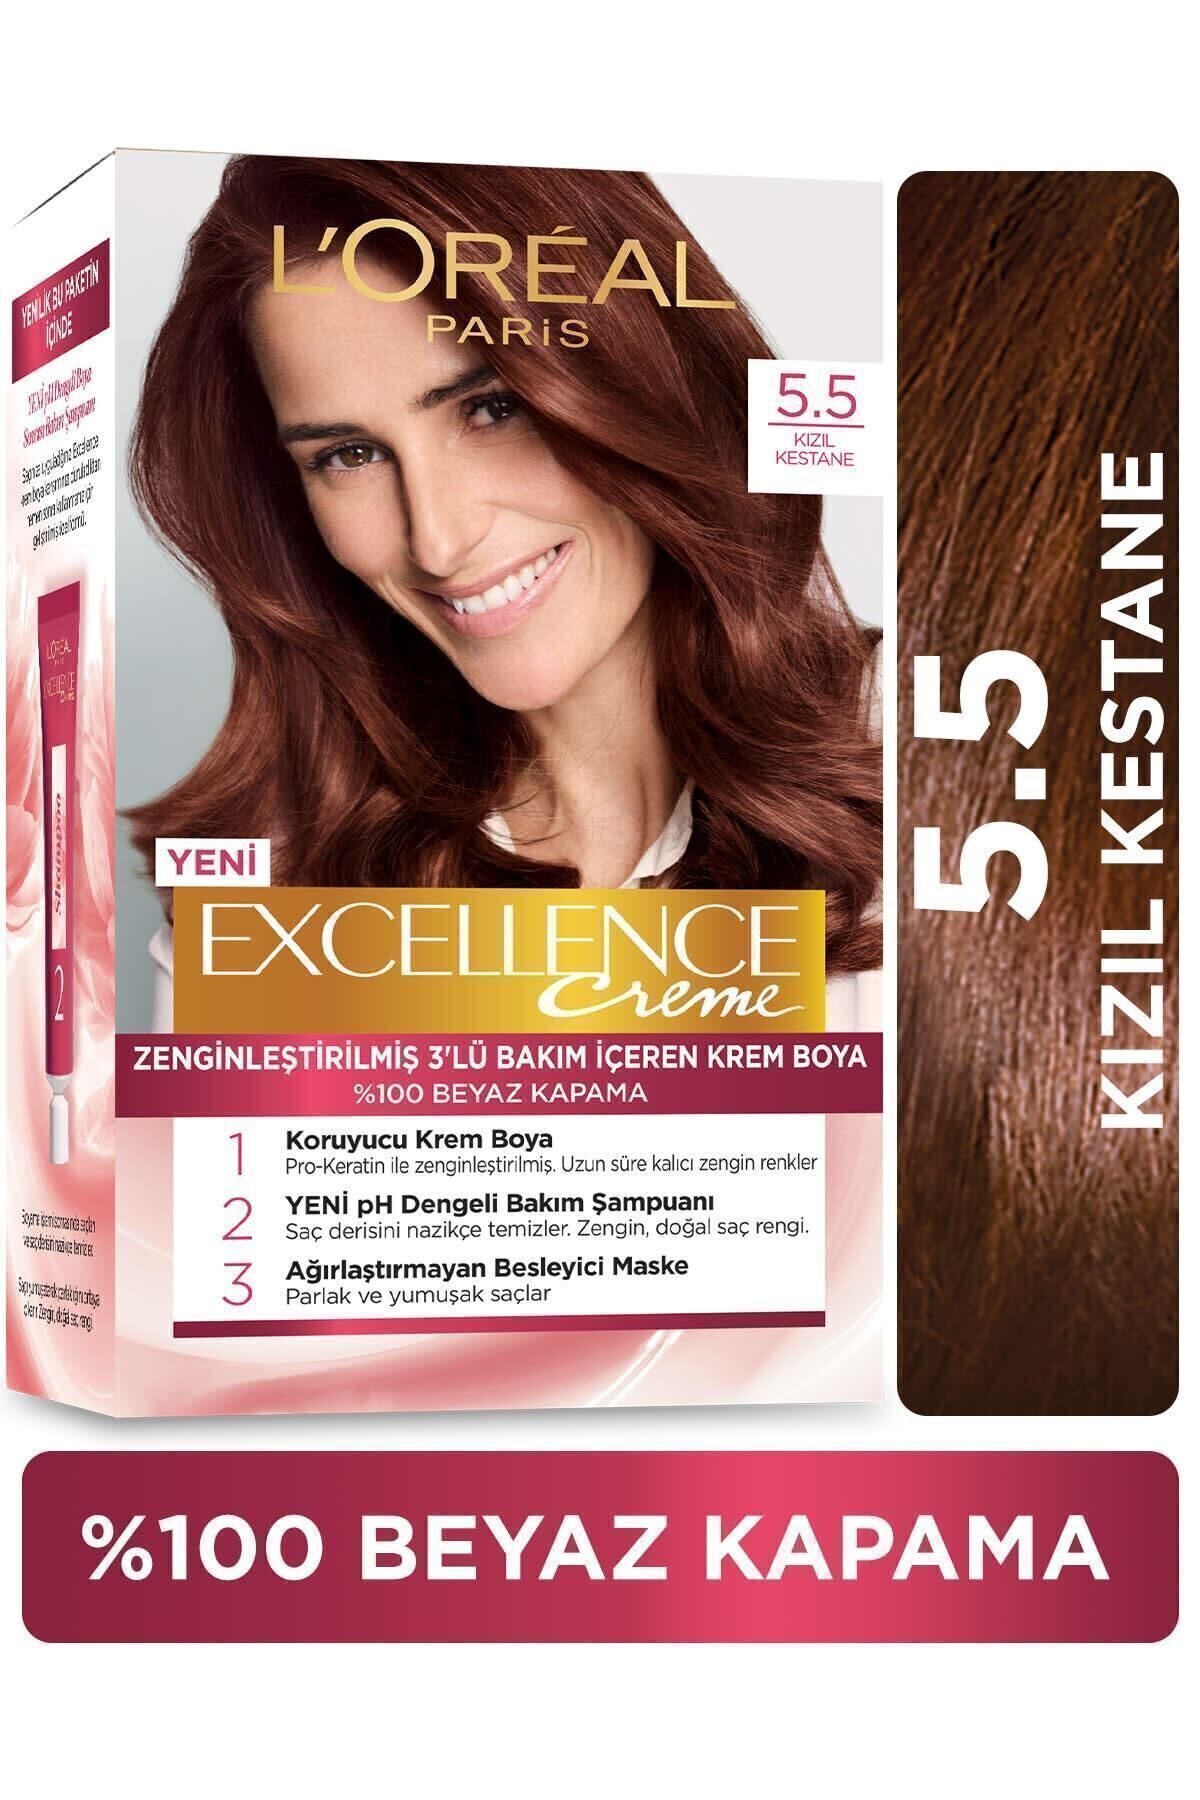 L'Oreal Paris Excellence Creme Saç Boyası - 5.5 Kızıl Kestane